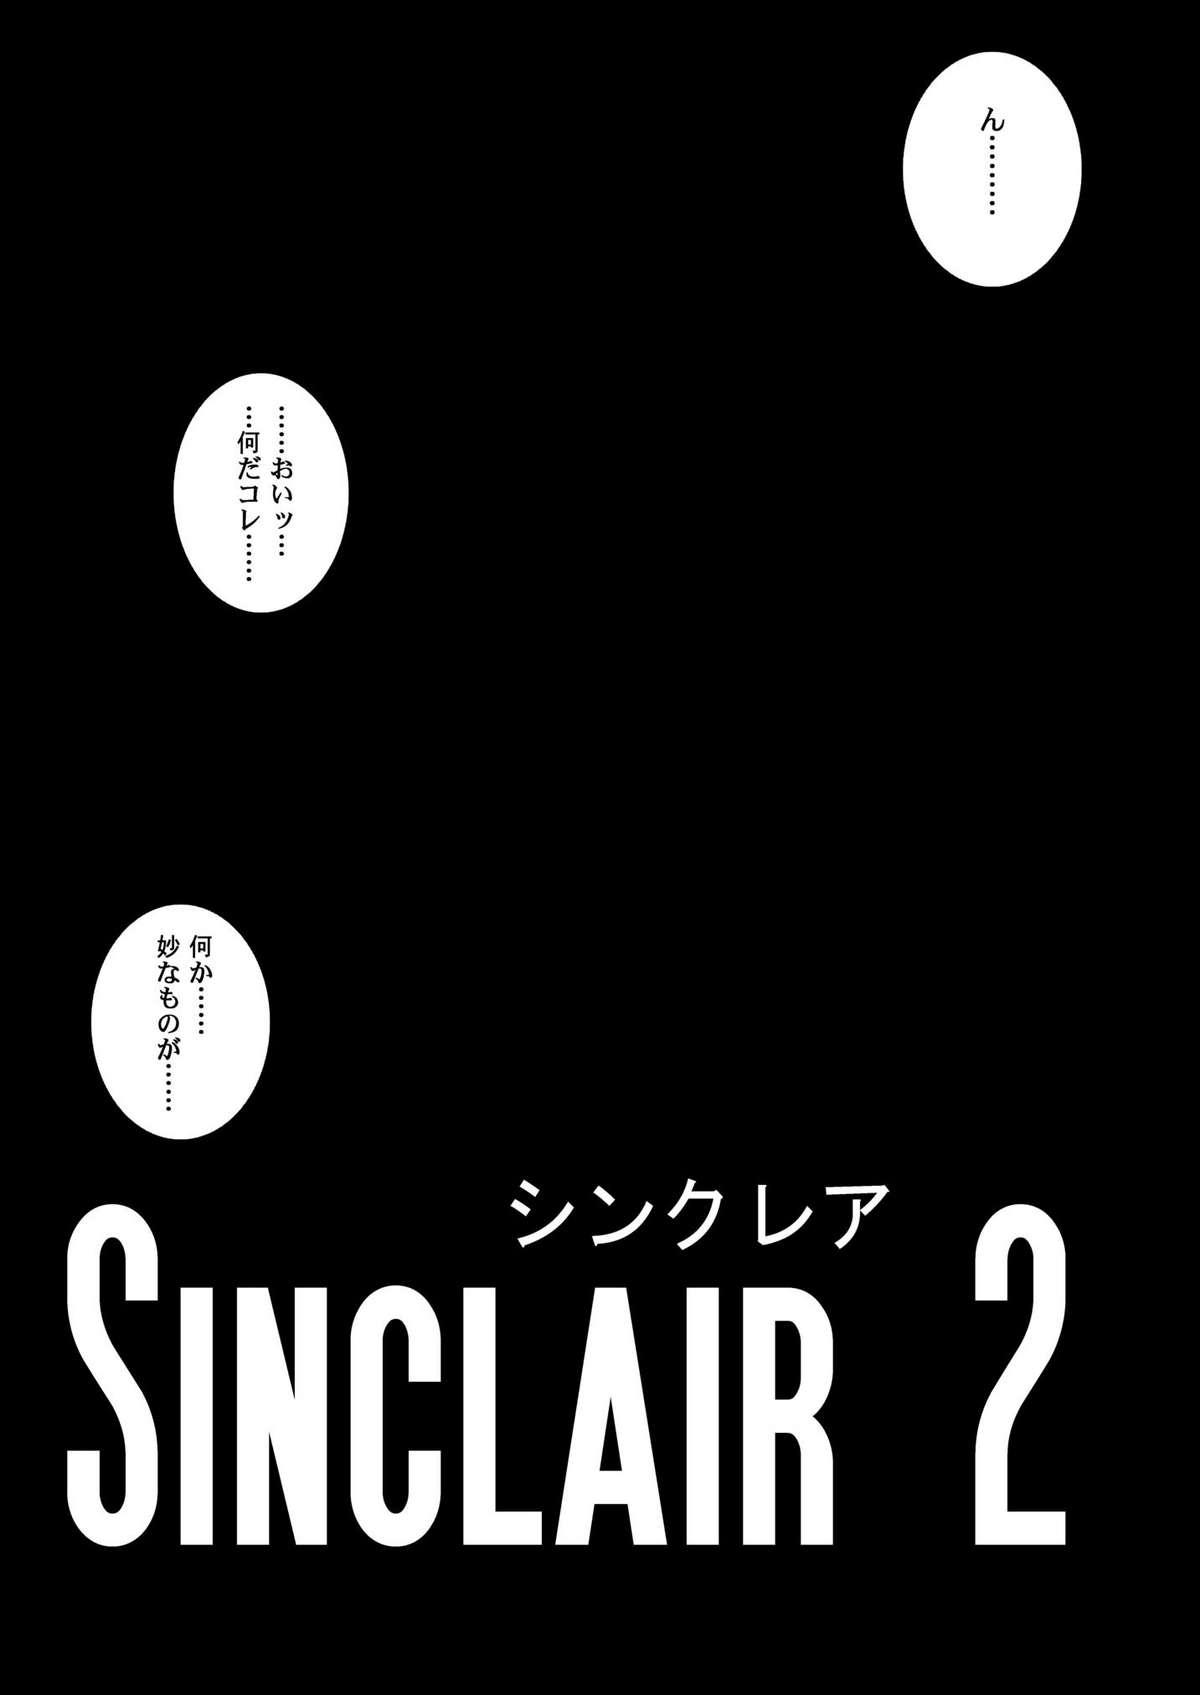 Sinclair 81